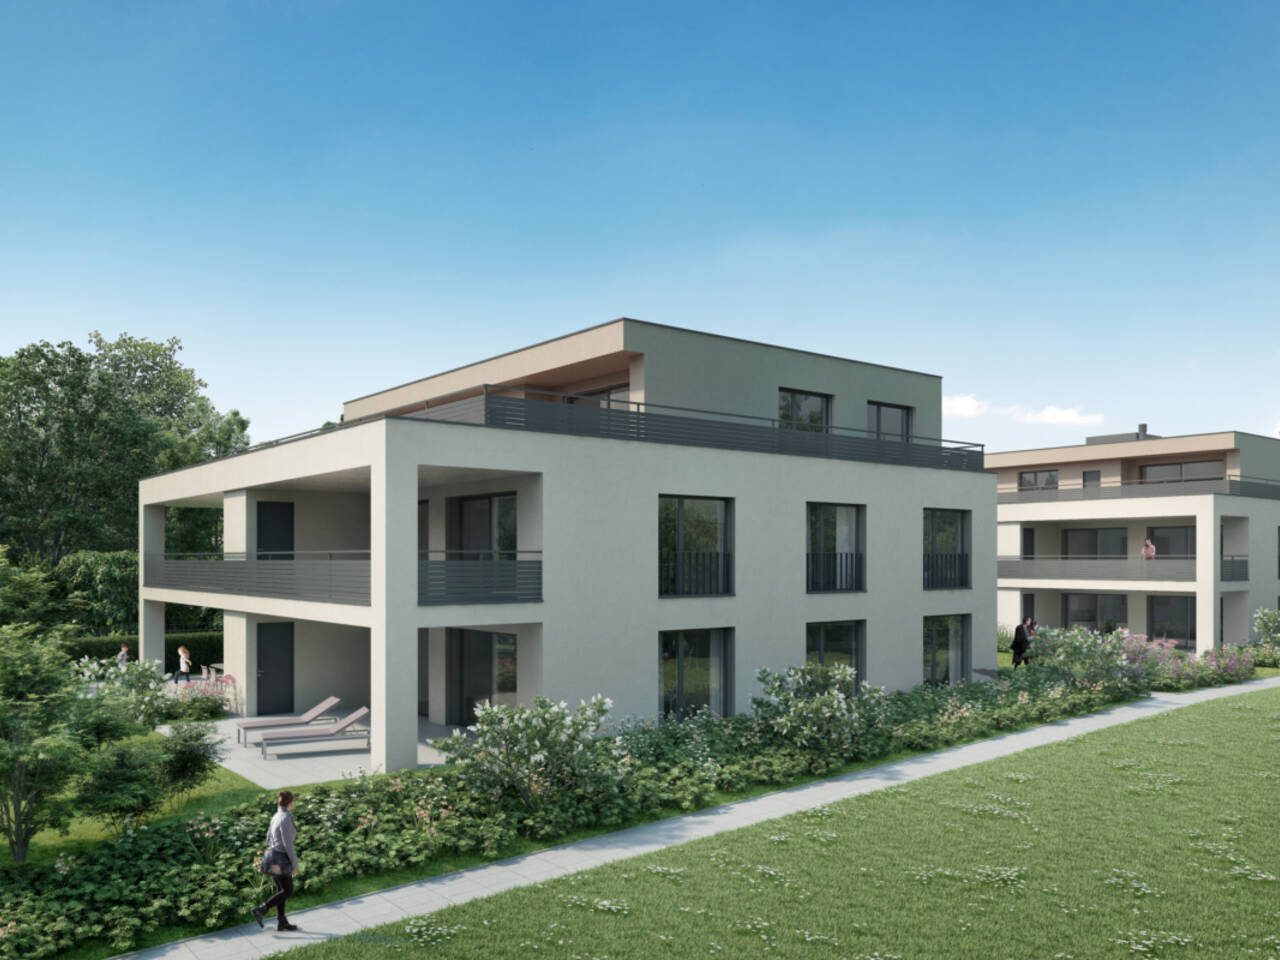 Visualisierung Neubau Sunnefeld in Gipf-Oberfrick - Seitliche Gebäudeansicht